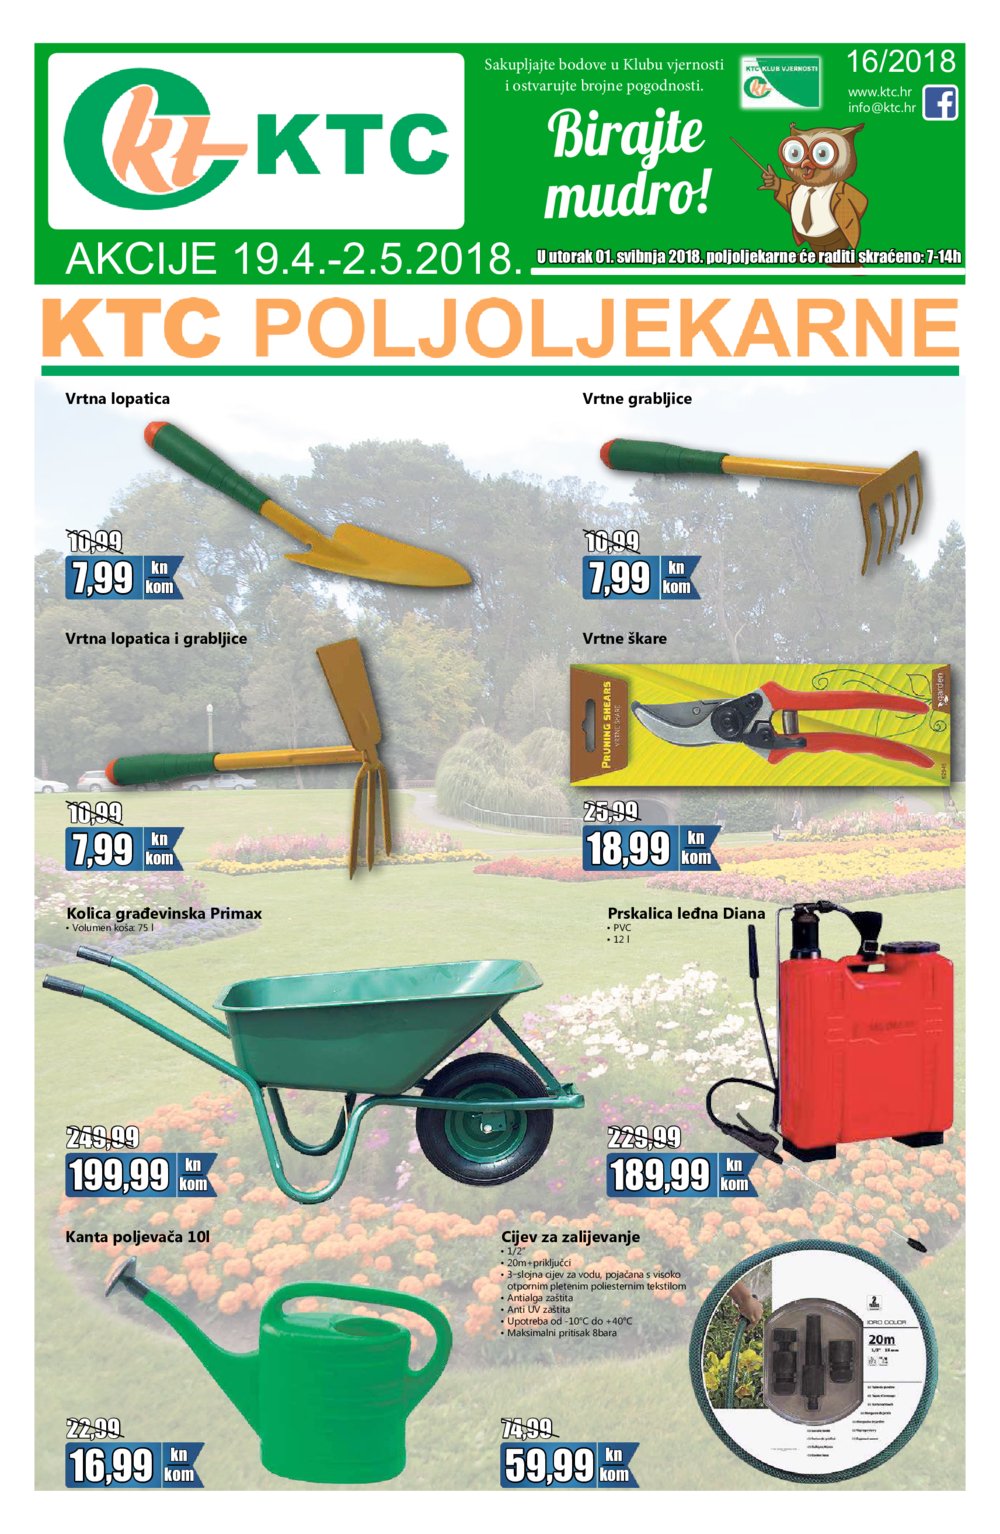 KTC katalog Poljoljekarne 19.04.-02.05.2018.